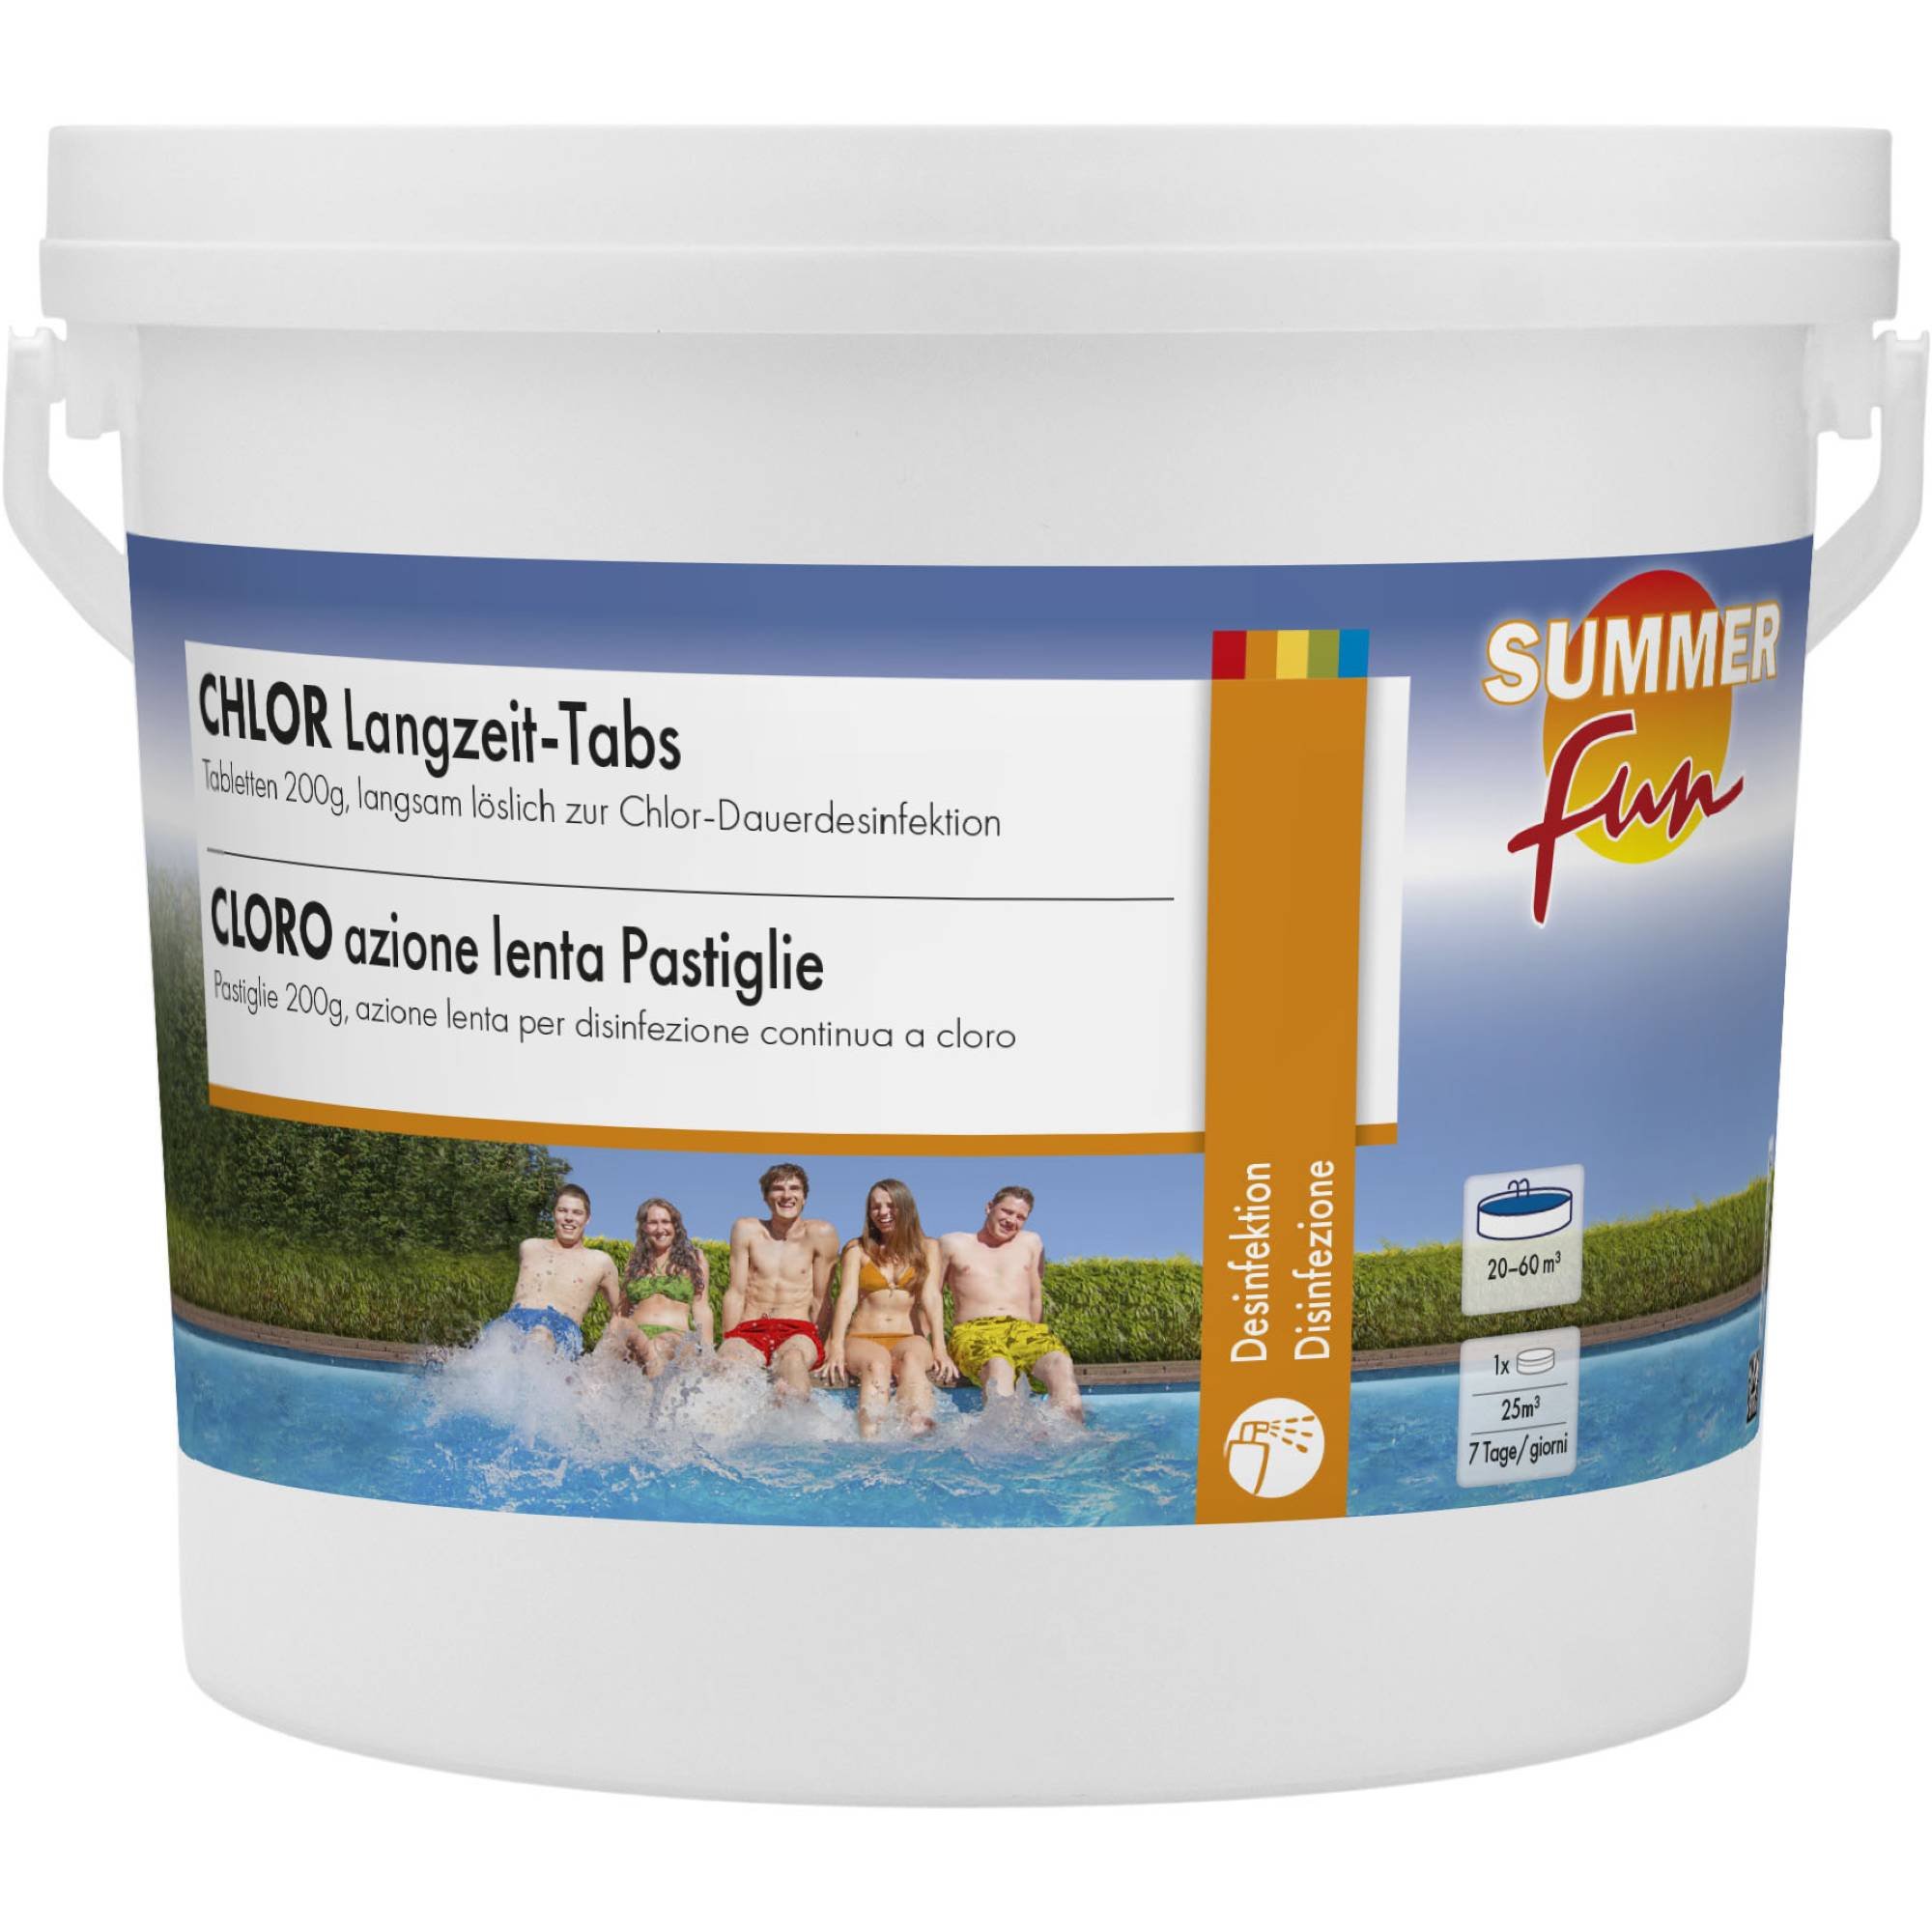 Summer Fun - Chlor Langzeit-Tabs - 200g Tabletten, 2,4 kg